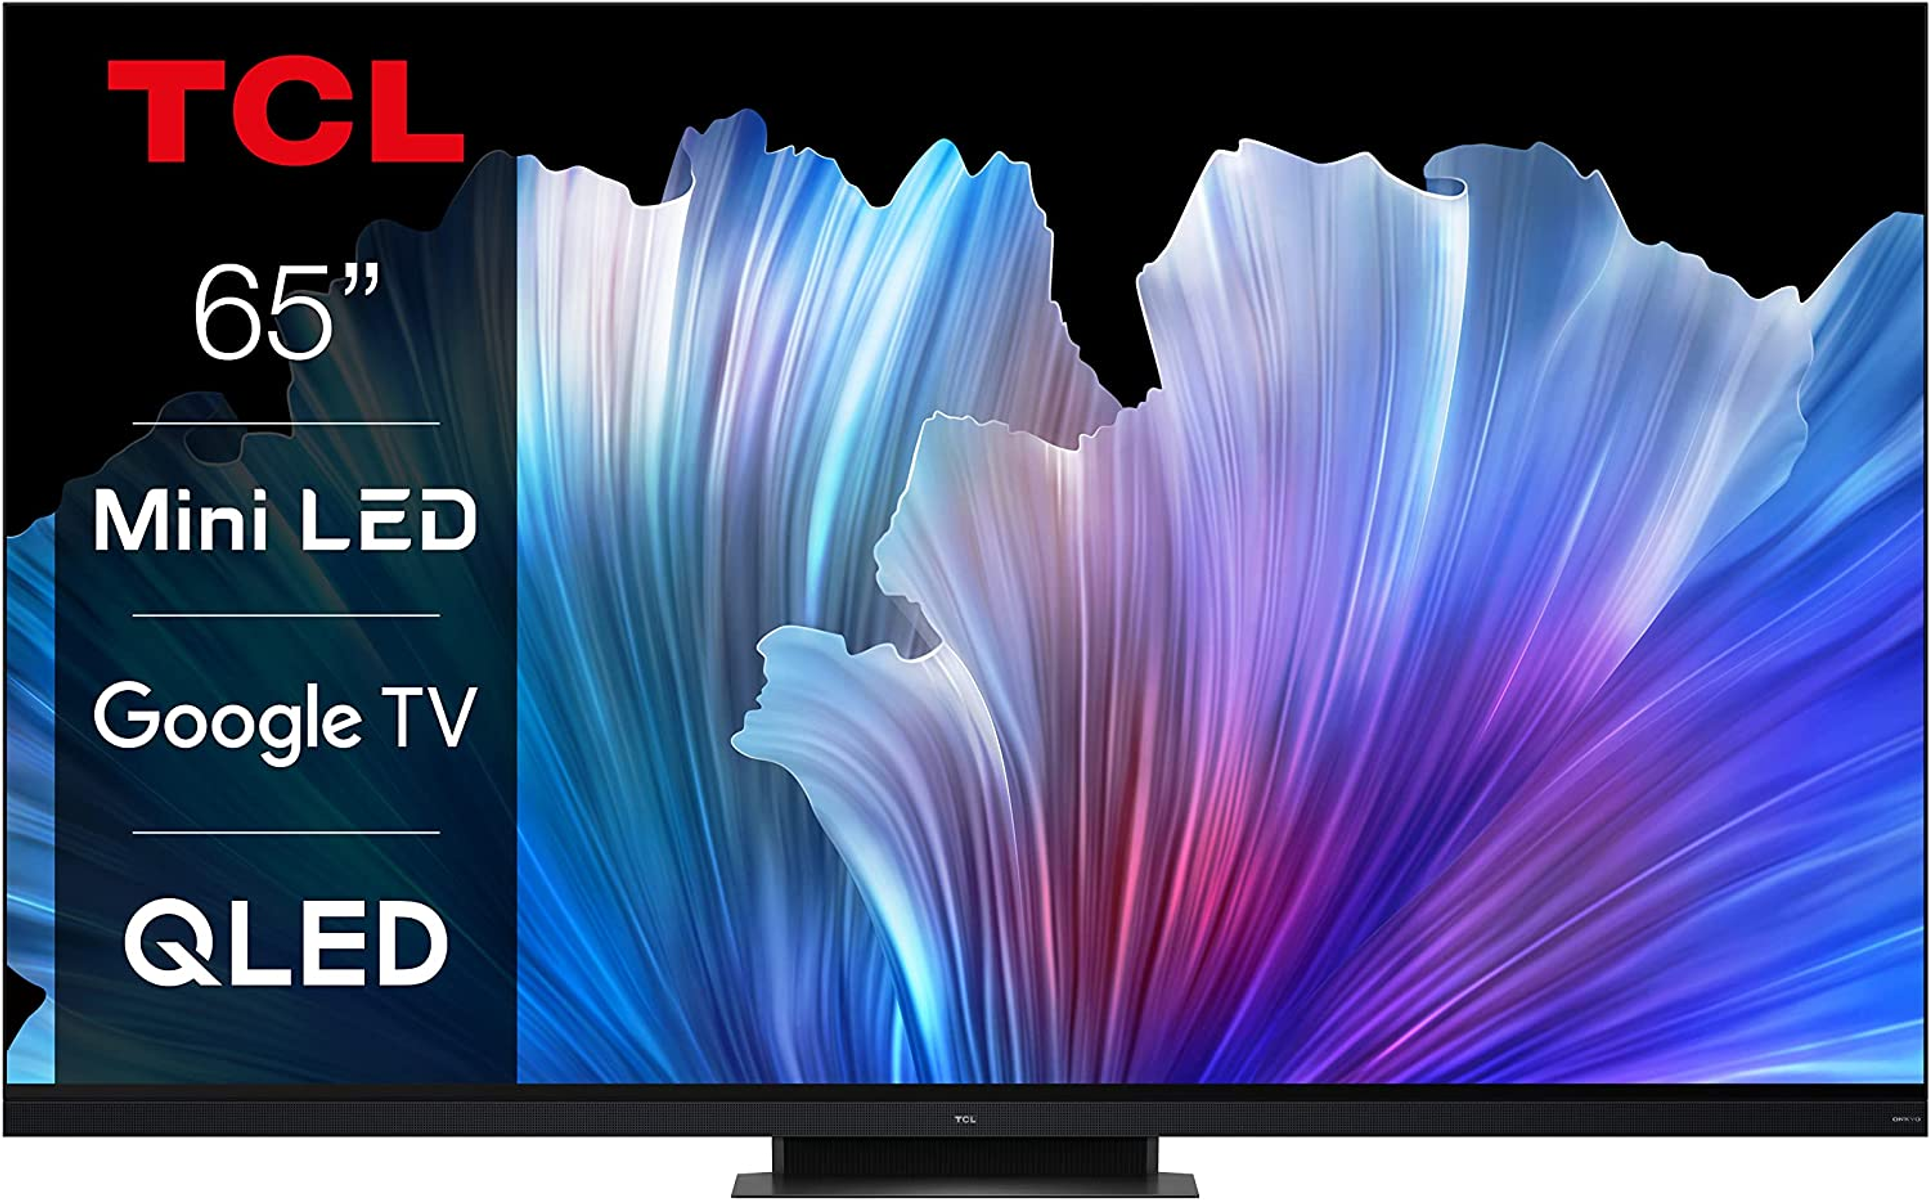 TCL 65 C 935 cm, Zoll UHD (Flat, LED Google 65 TV) 4K, TV / 165